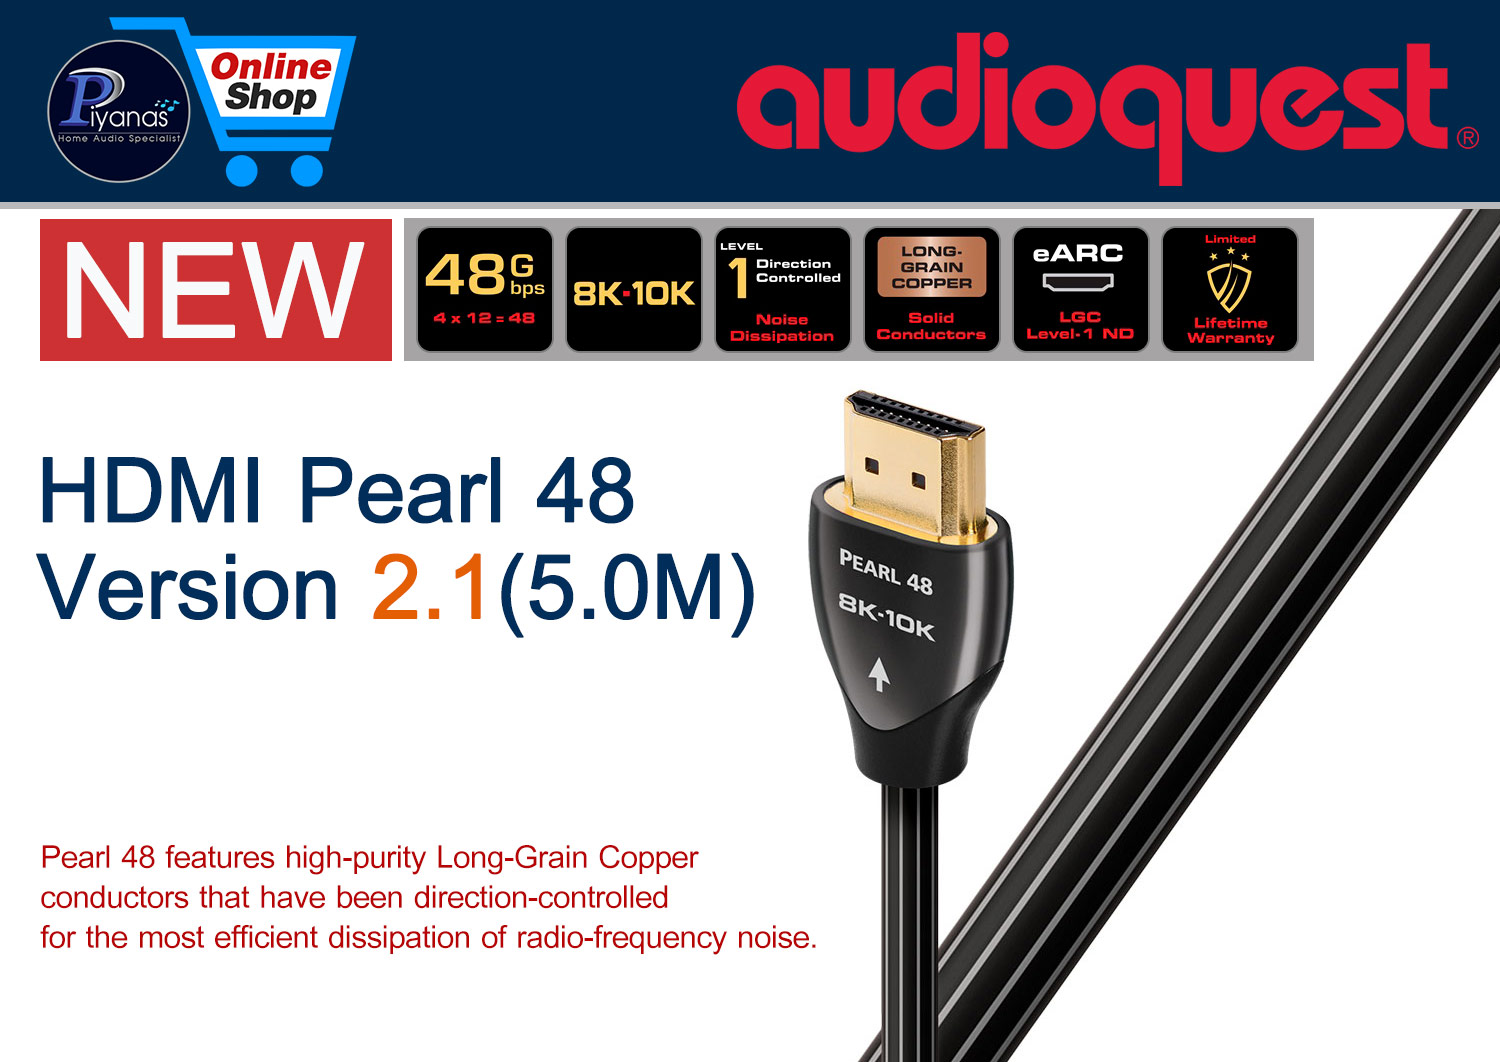 HDMI-Pearl 48 Version 2.1 (5.0M)